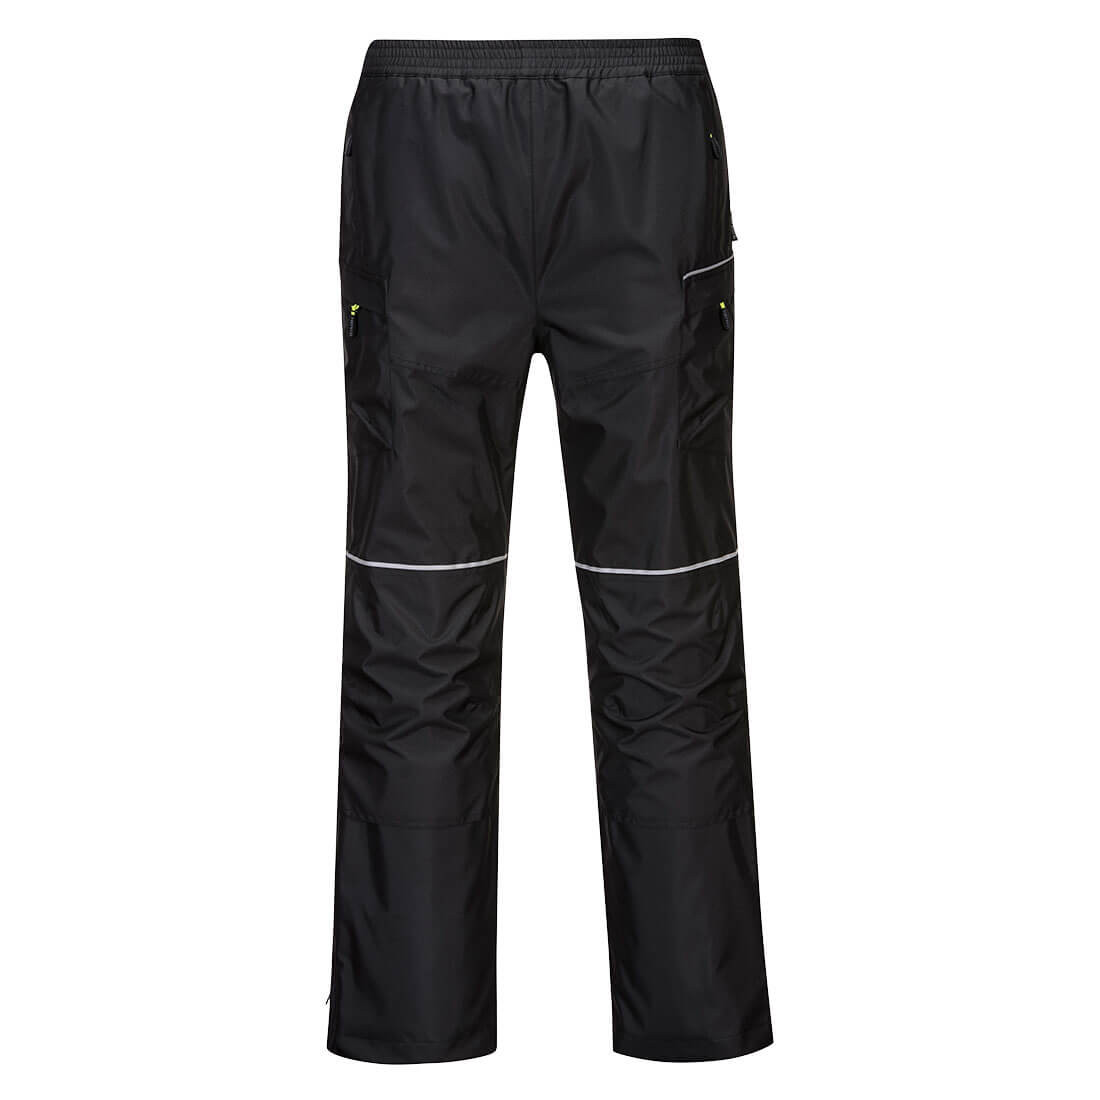 Pantalon de pluie PW3 - Les vêtements de protection